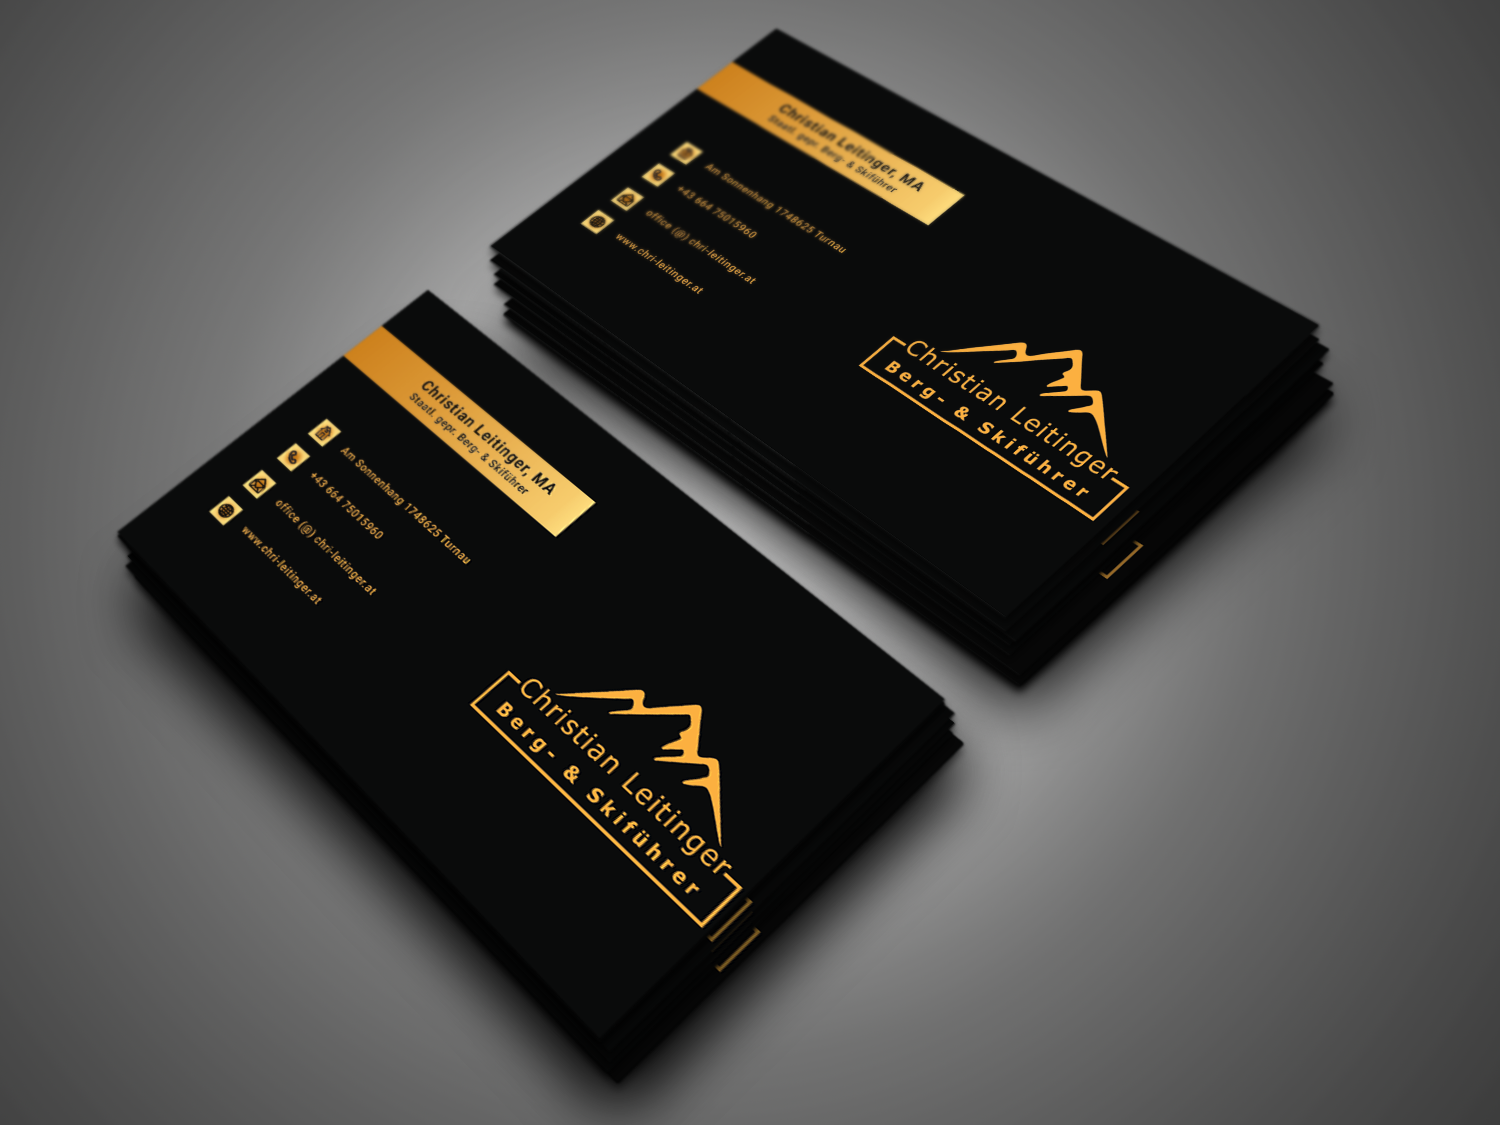 Với thiết kế card visit đẳng cấp và logo tối giản, chúng tôi đang tạo ra một xu hướng mới trong ngành thiết kế. Với sự chuyên nghiệp và tinh tế trong từng chi tiết, chúng tôi giúp bạn nâng cao giá trị của thương hiệu của mình. Cùng chúng tôi tạo ra những sản phẩm độc đáo và có giá trị nhất cho bạn.